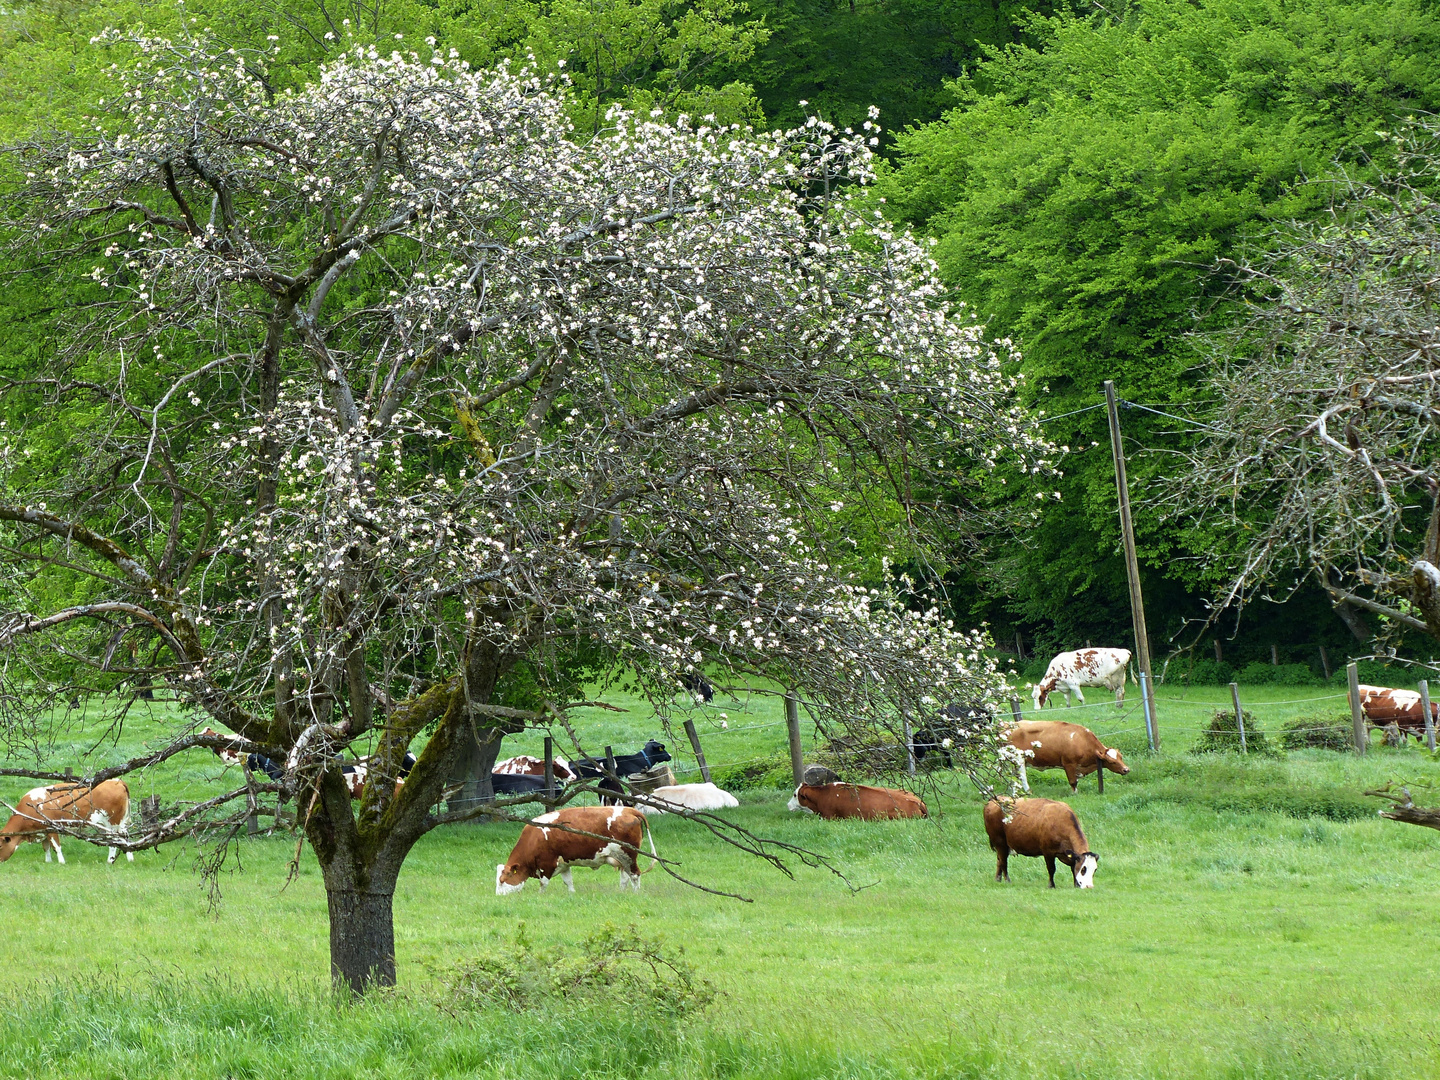 friedlich grasende Rinder unter blühenden Bäumen